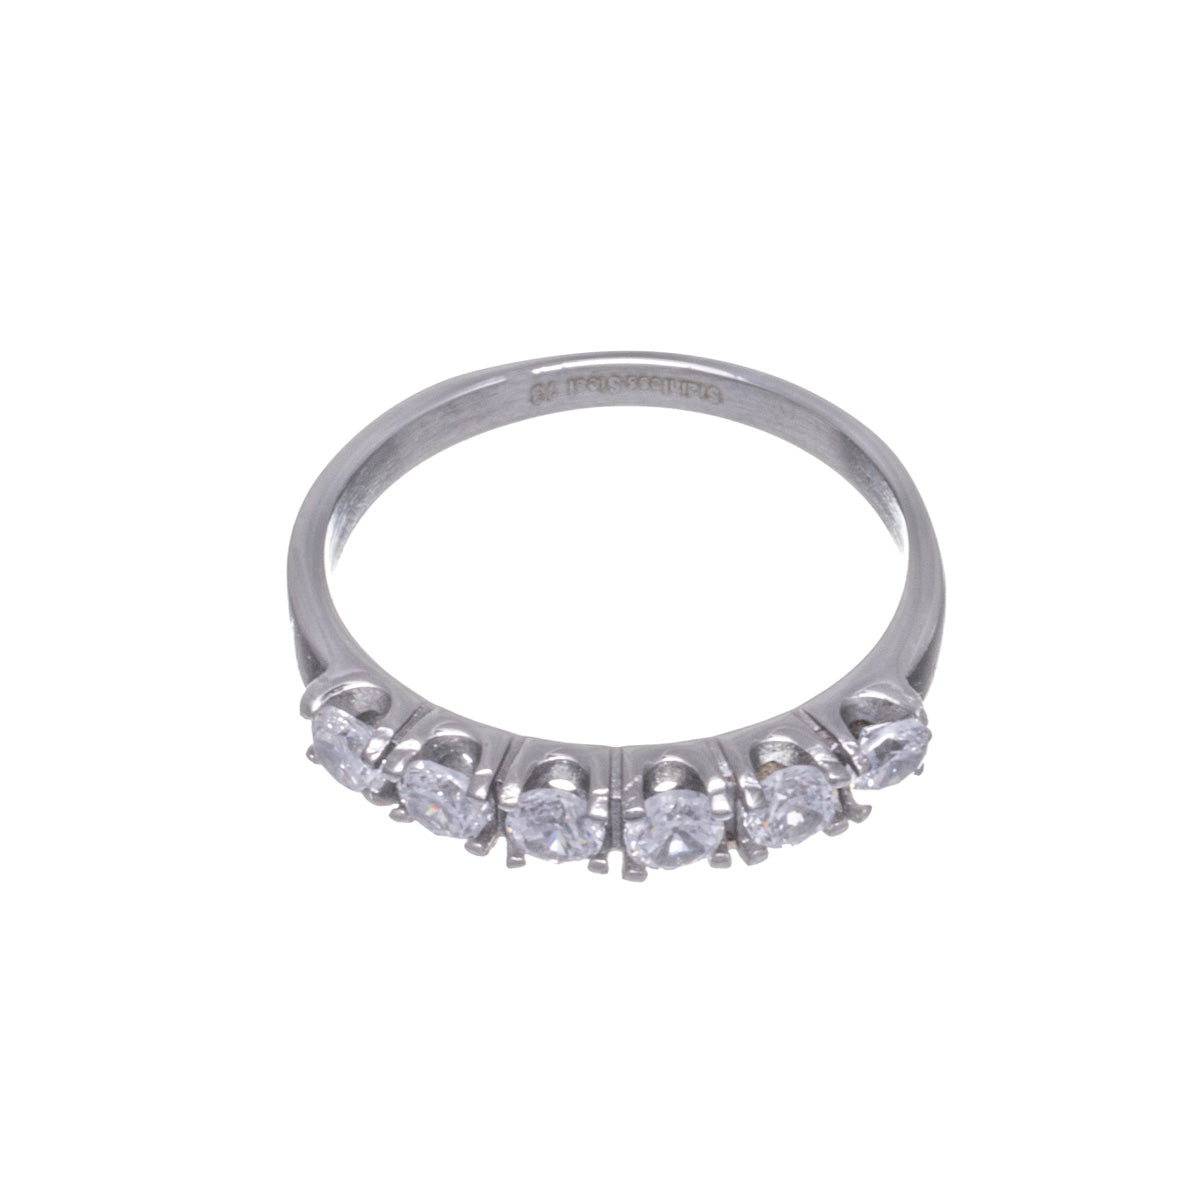 Zirconia steel ring with 6 zirconia stones in a row (Steel 316L)